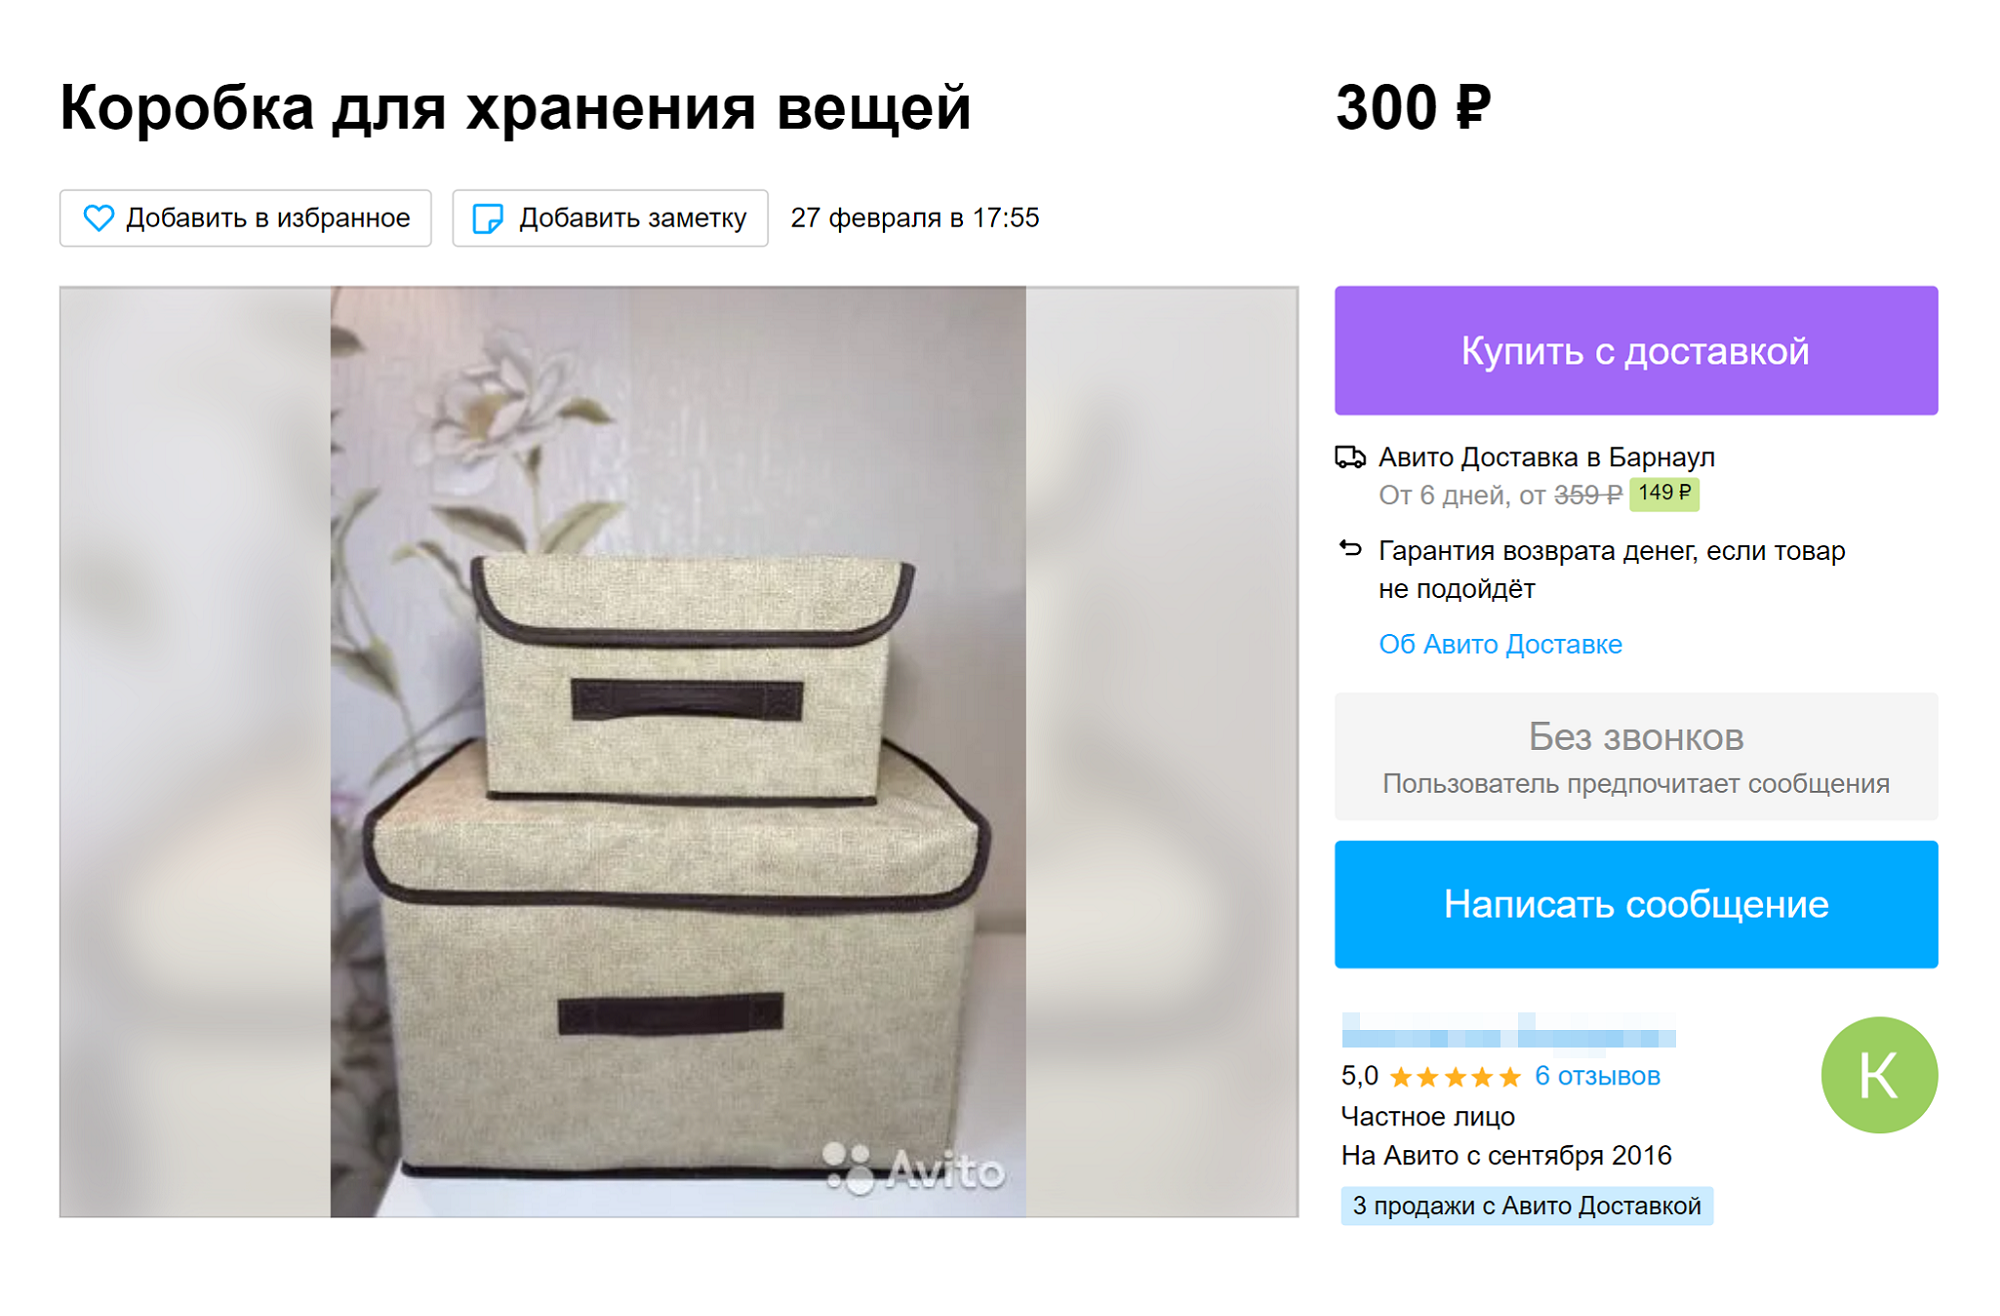 На «Авито» можно найти неплохие варианты для хранения. Например, в этом объявлении большую коробку продают за 500 ₽, маленькую — за 300 ₽, а обе сразу — за 700 ₽ Источник: avito.ru